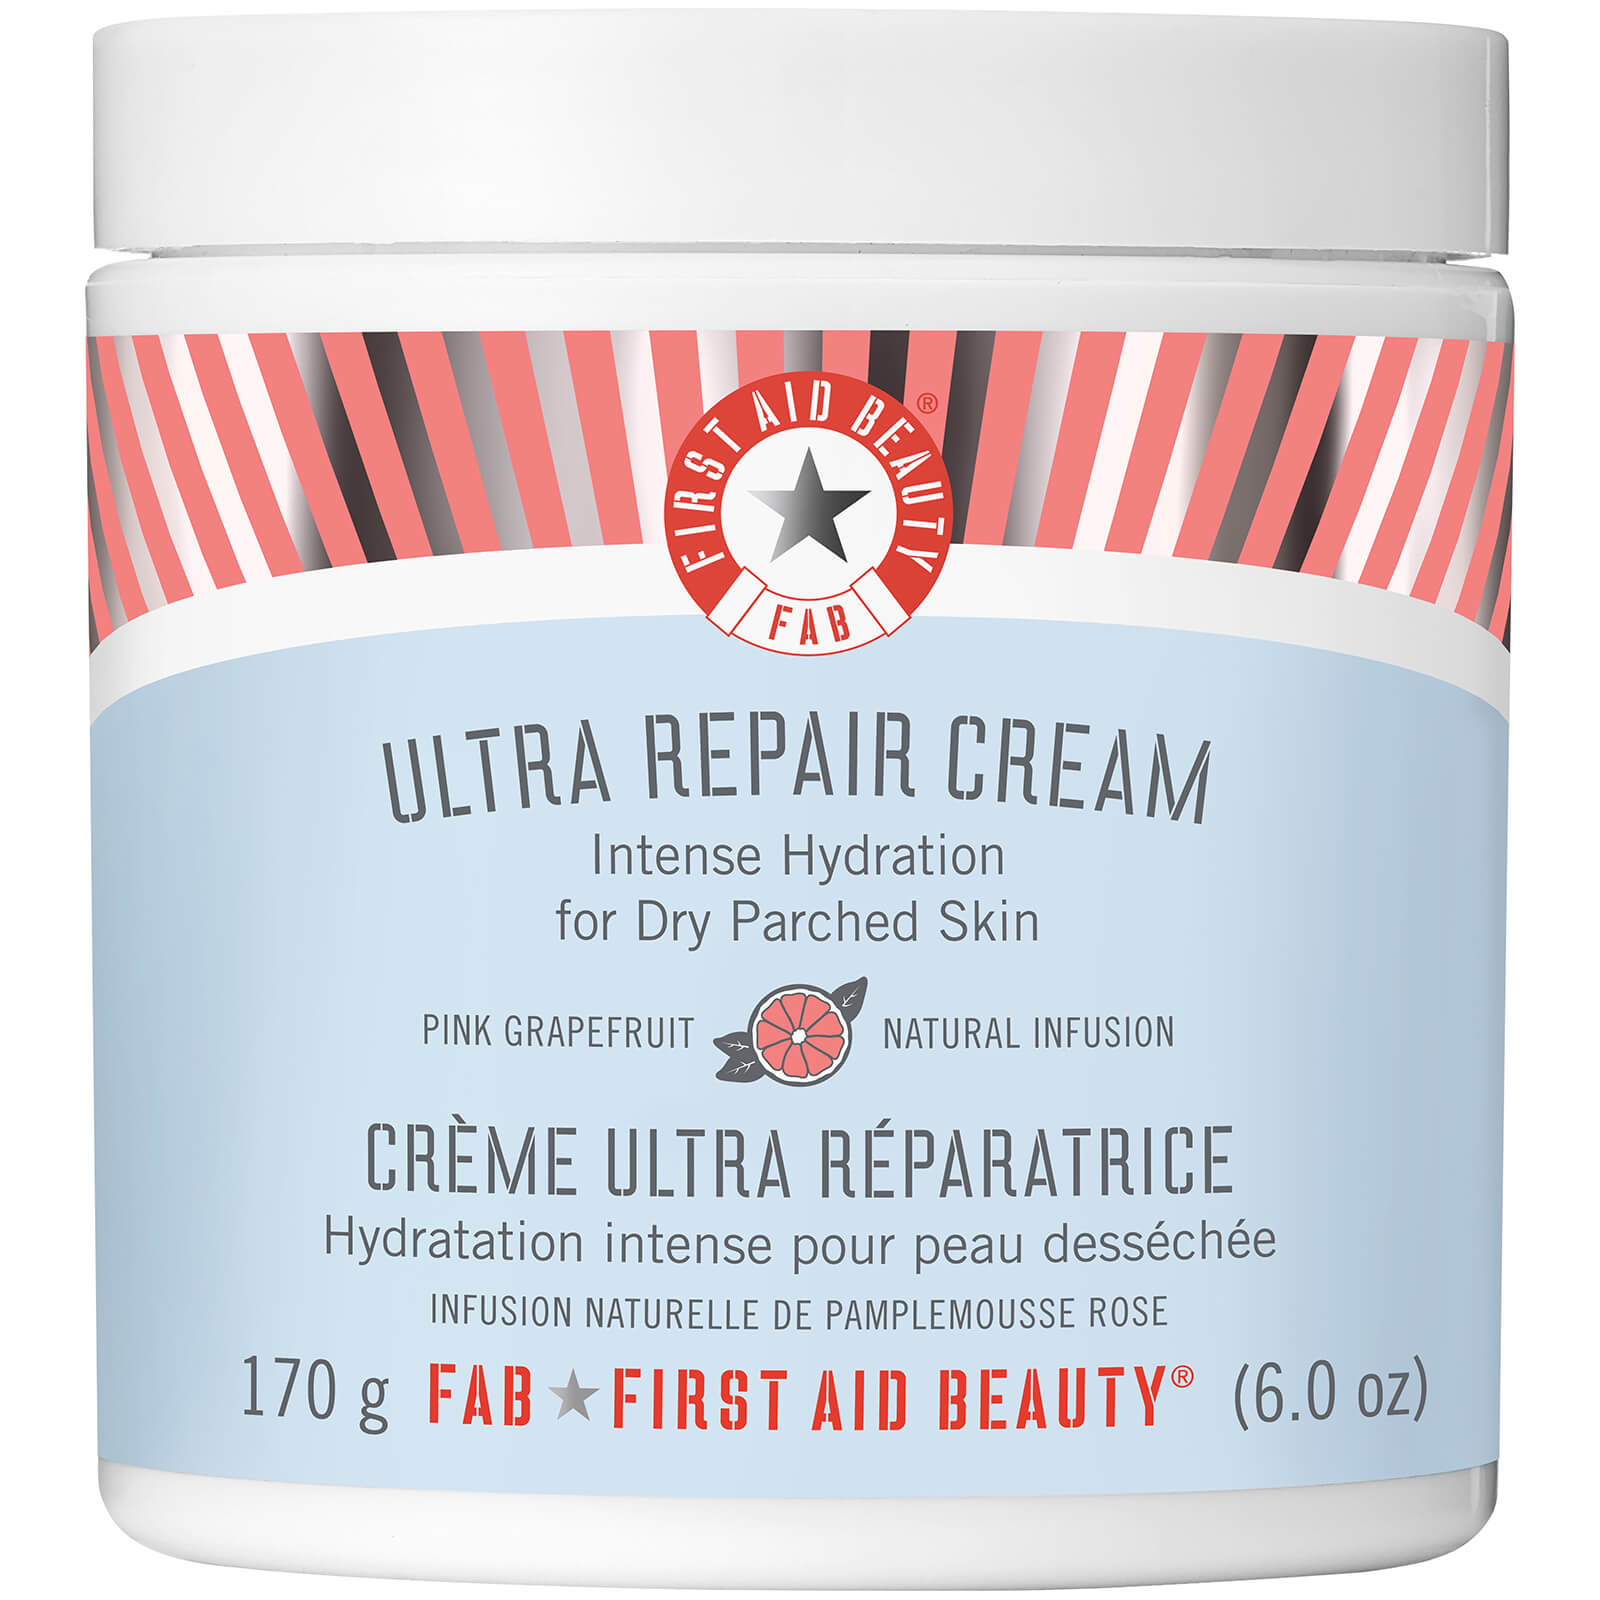 First Aid Beauty Ultra Repair Cream 170g - Pink Grapefruit